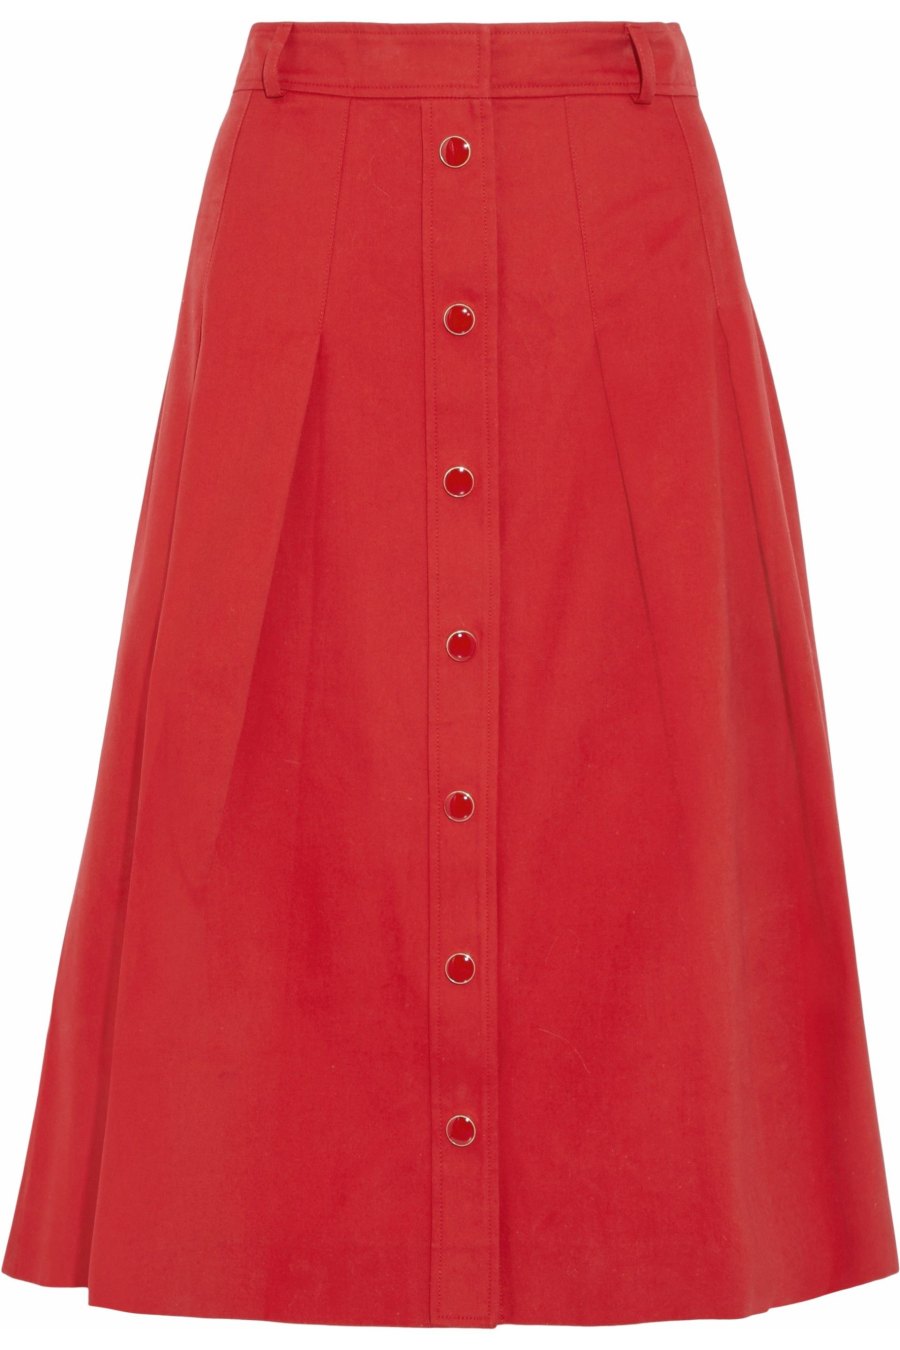 Vanessa Seward Pleated Cotton Skirt